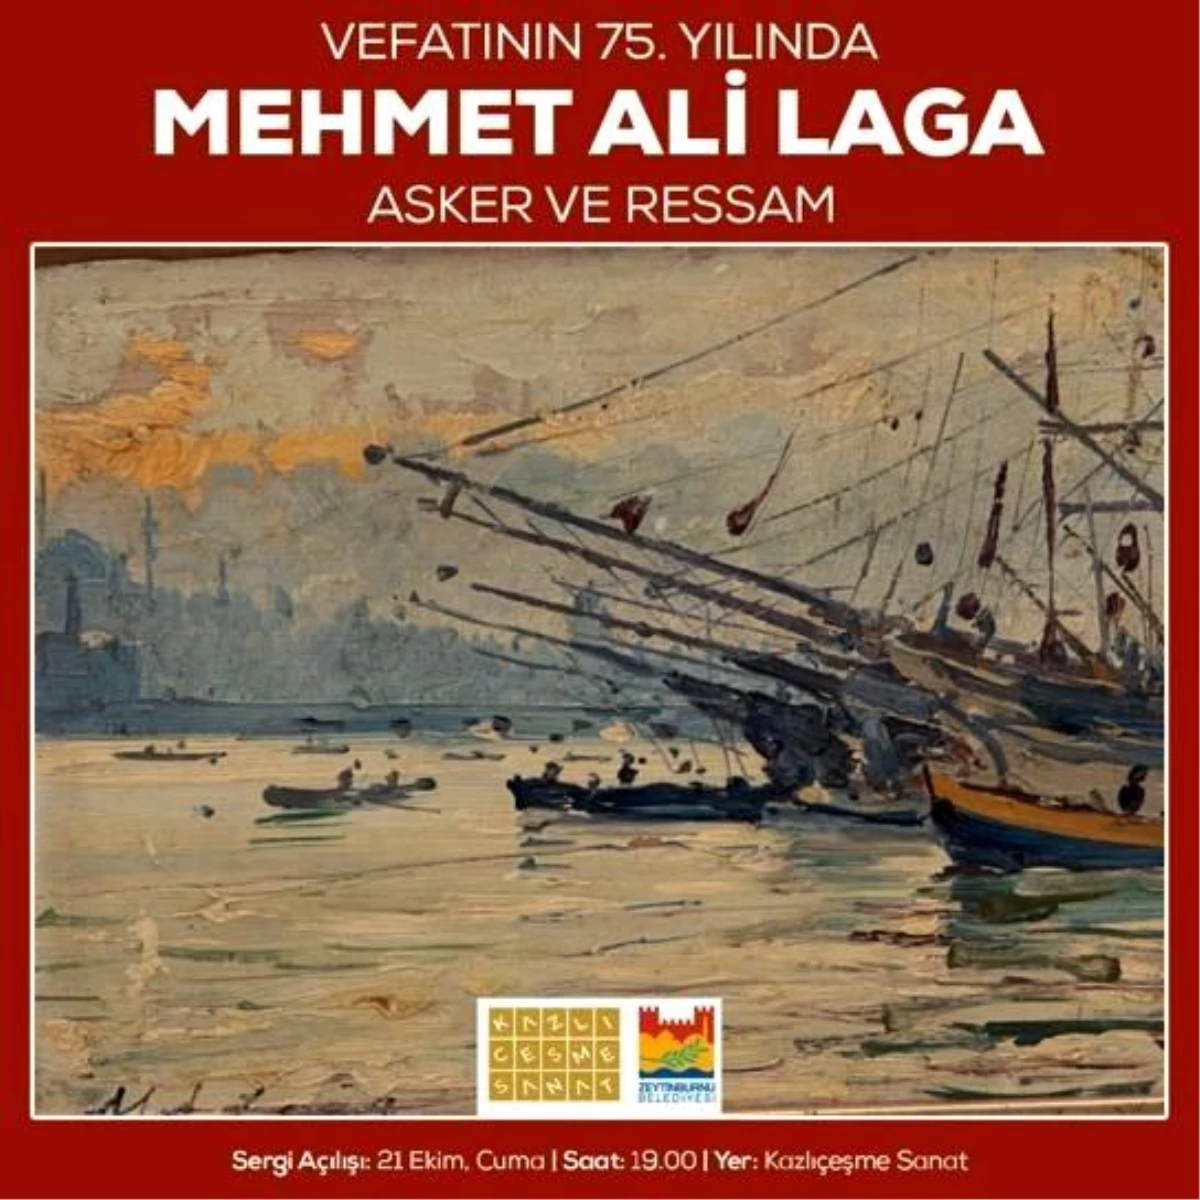 "Vefatının 75. Yılında Mehmet Ali Laga Asker ve Ressam Sergisi" açılıyor